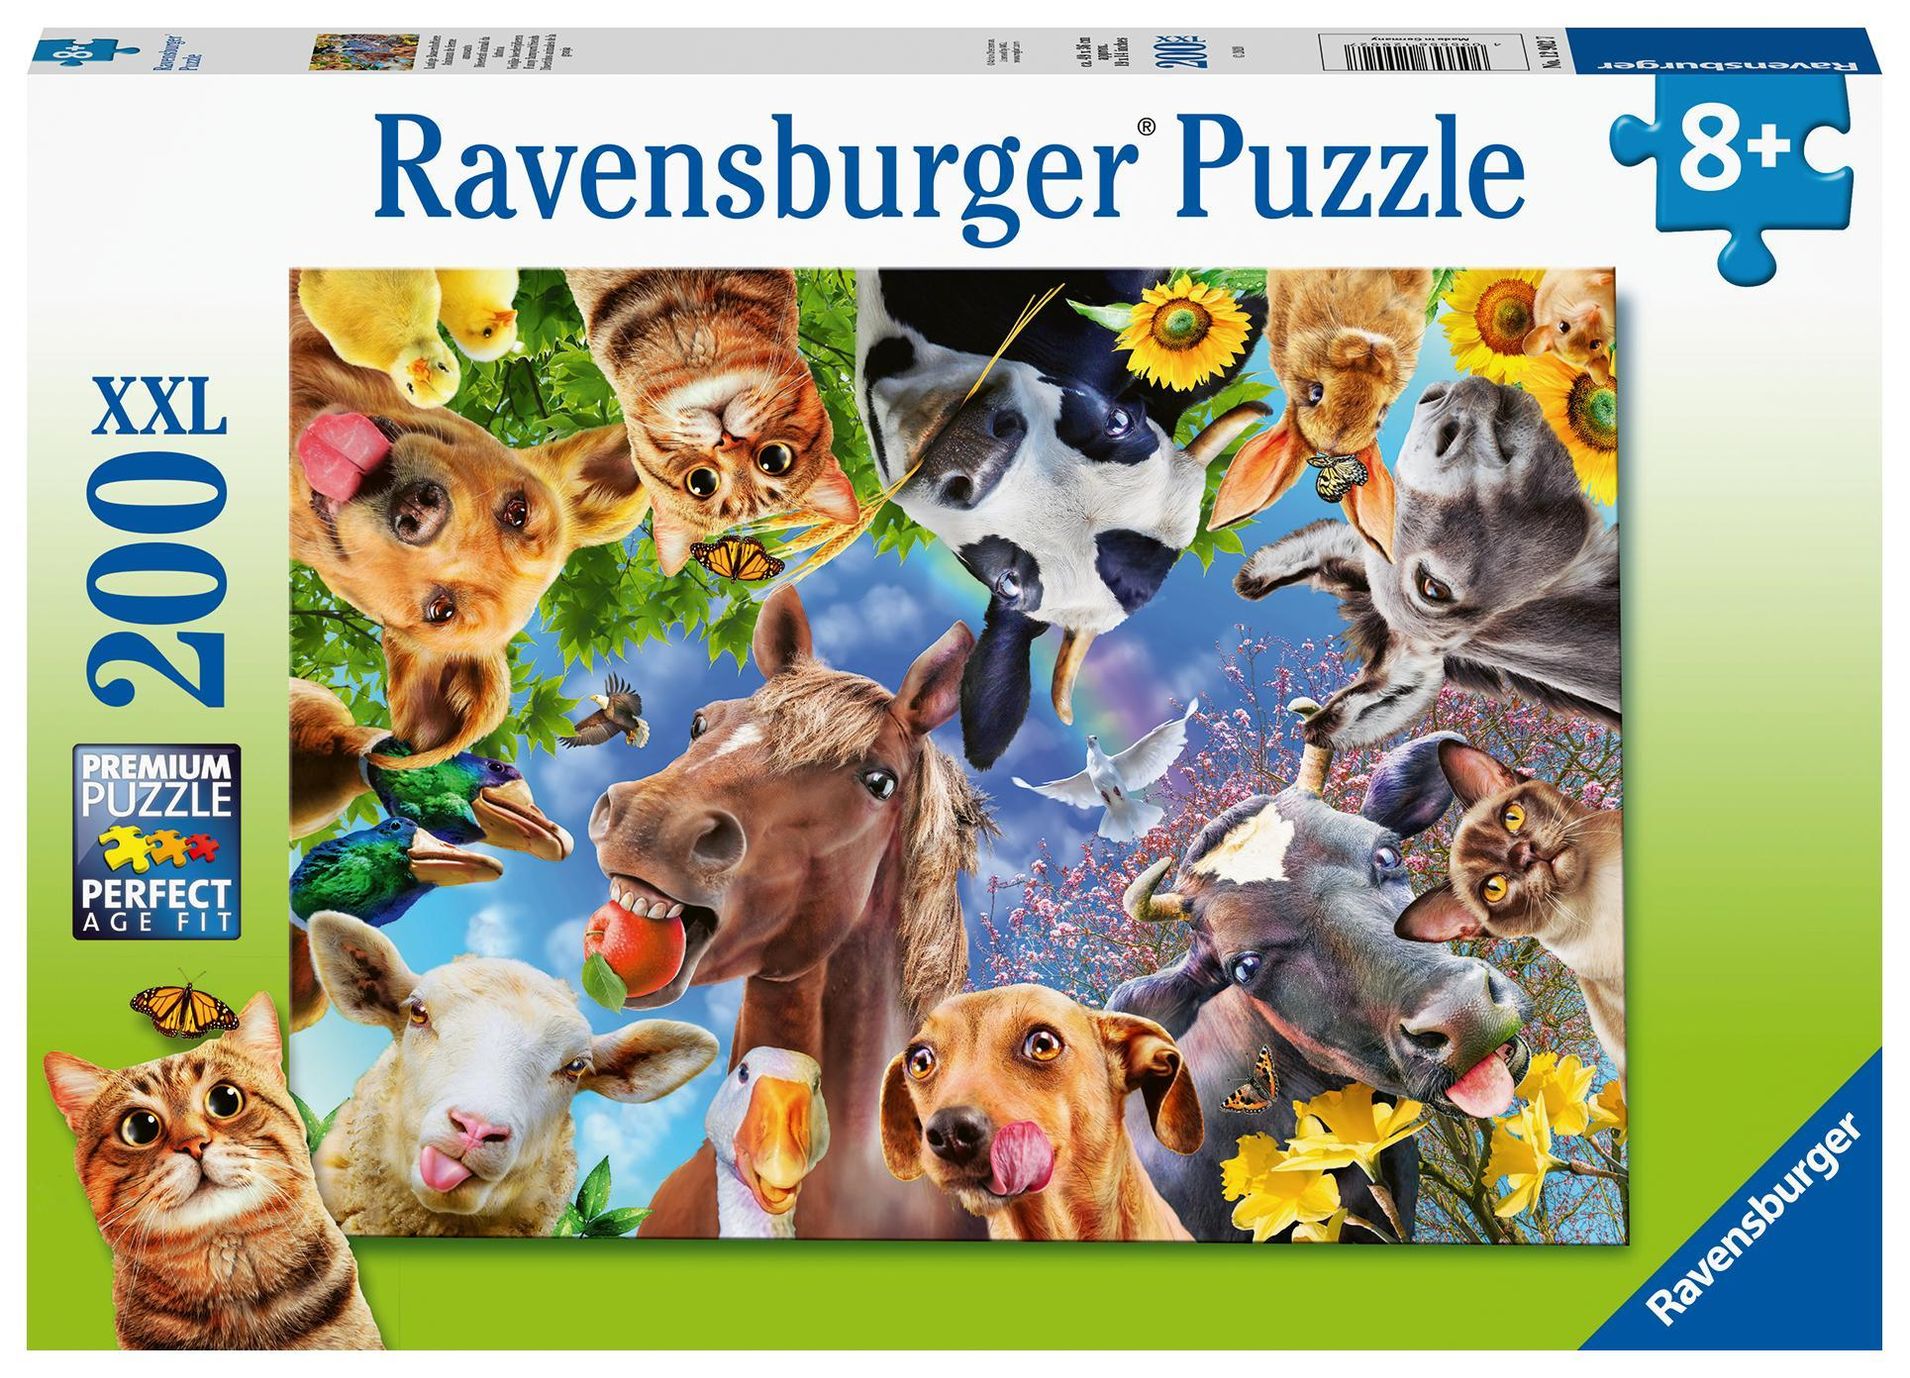 Ravensburger Kinderpuzzle - 12902 Lustige Bauernhoftiere - Tier-Puzzle für  Kinder ab 8 Jahren, mit 200 Teilen im XXL-For | Weltbild.ch